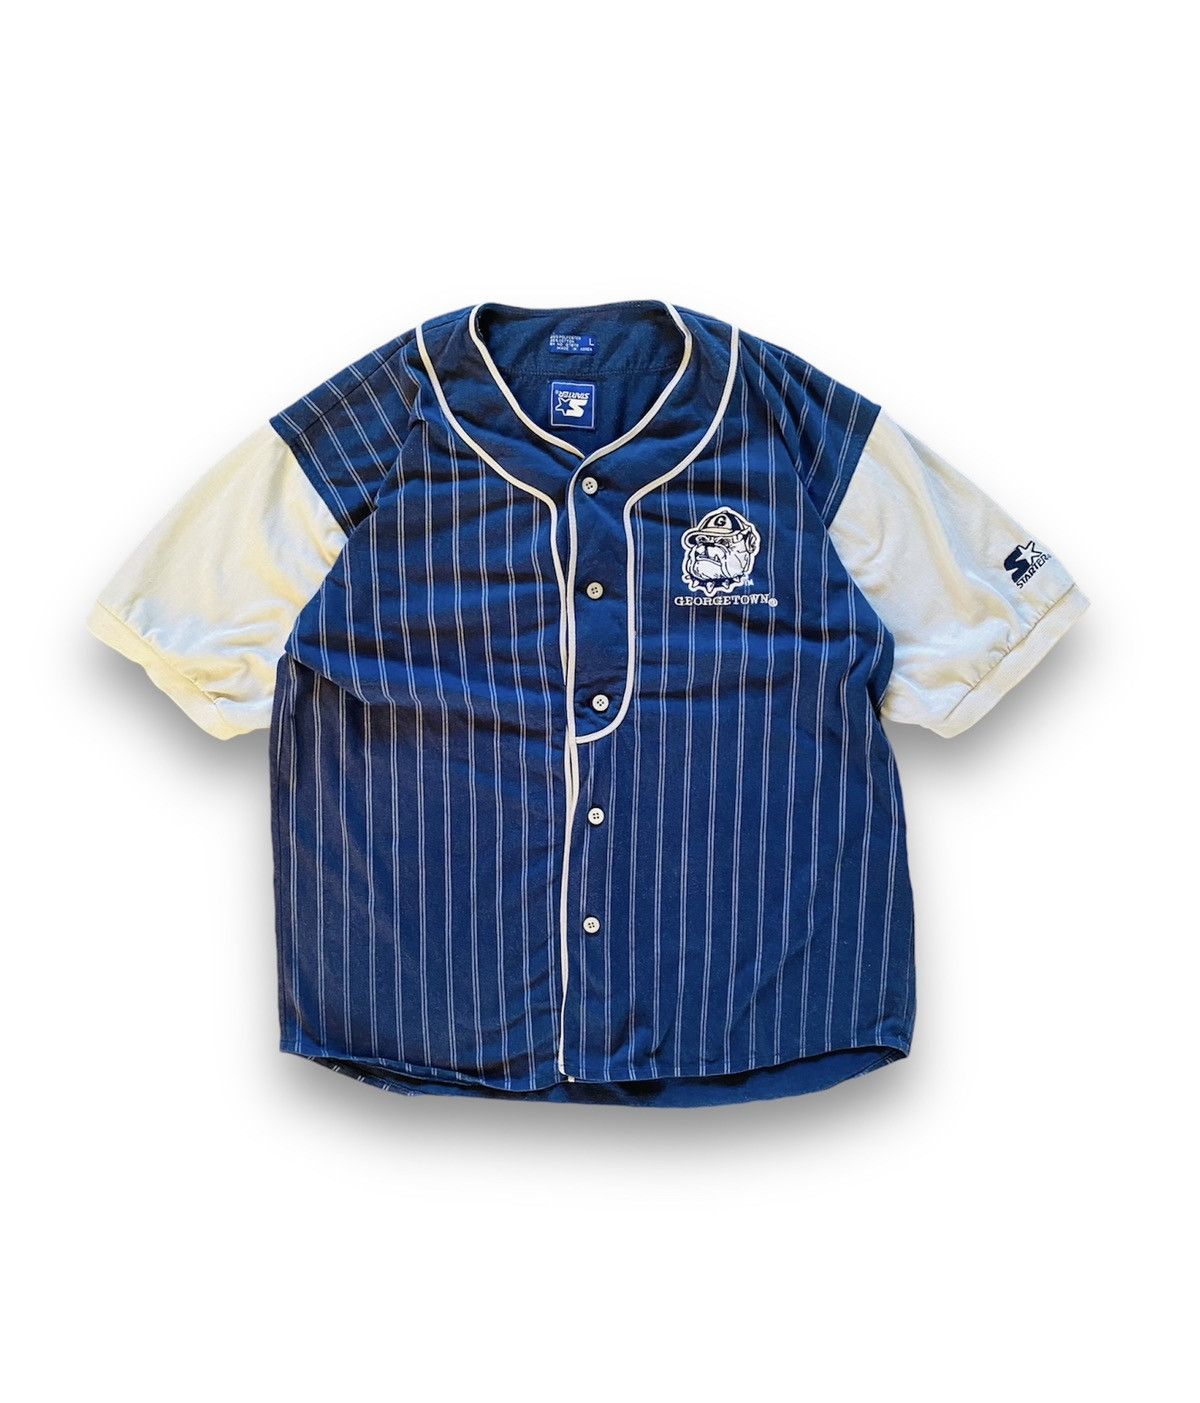 Starter Georgetown Hoyas Vintage Cotton Baseball Tee Men’s - 1